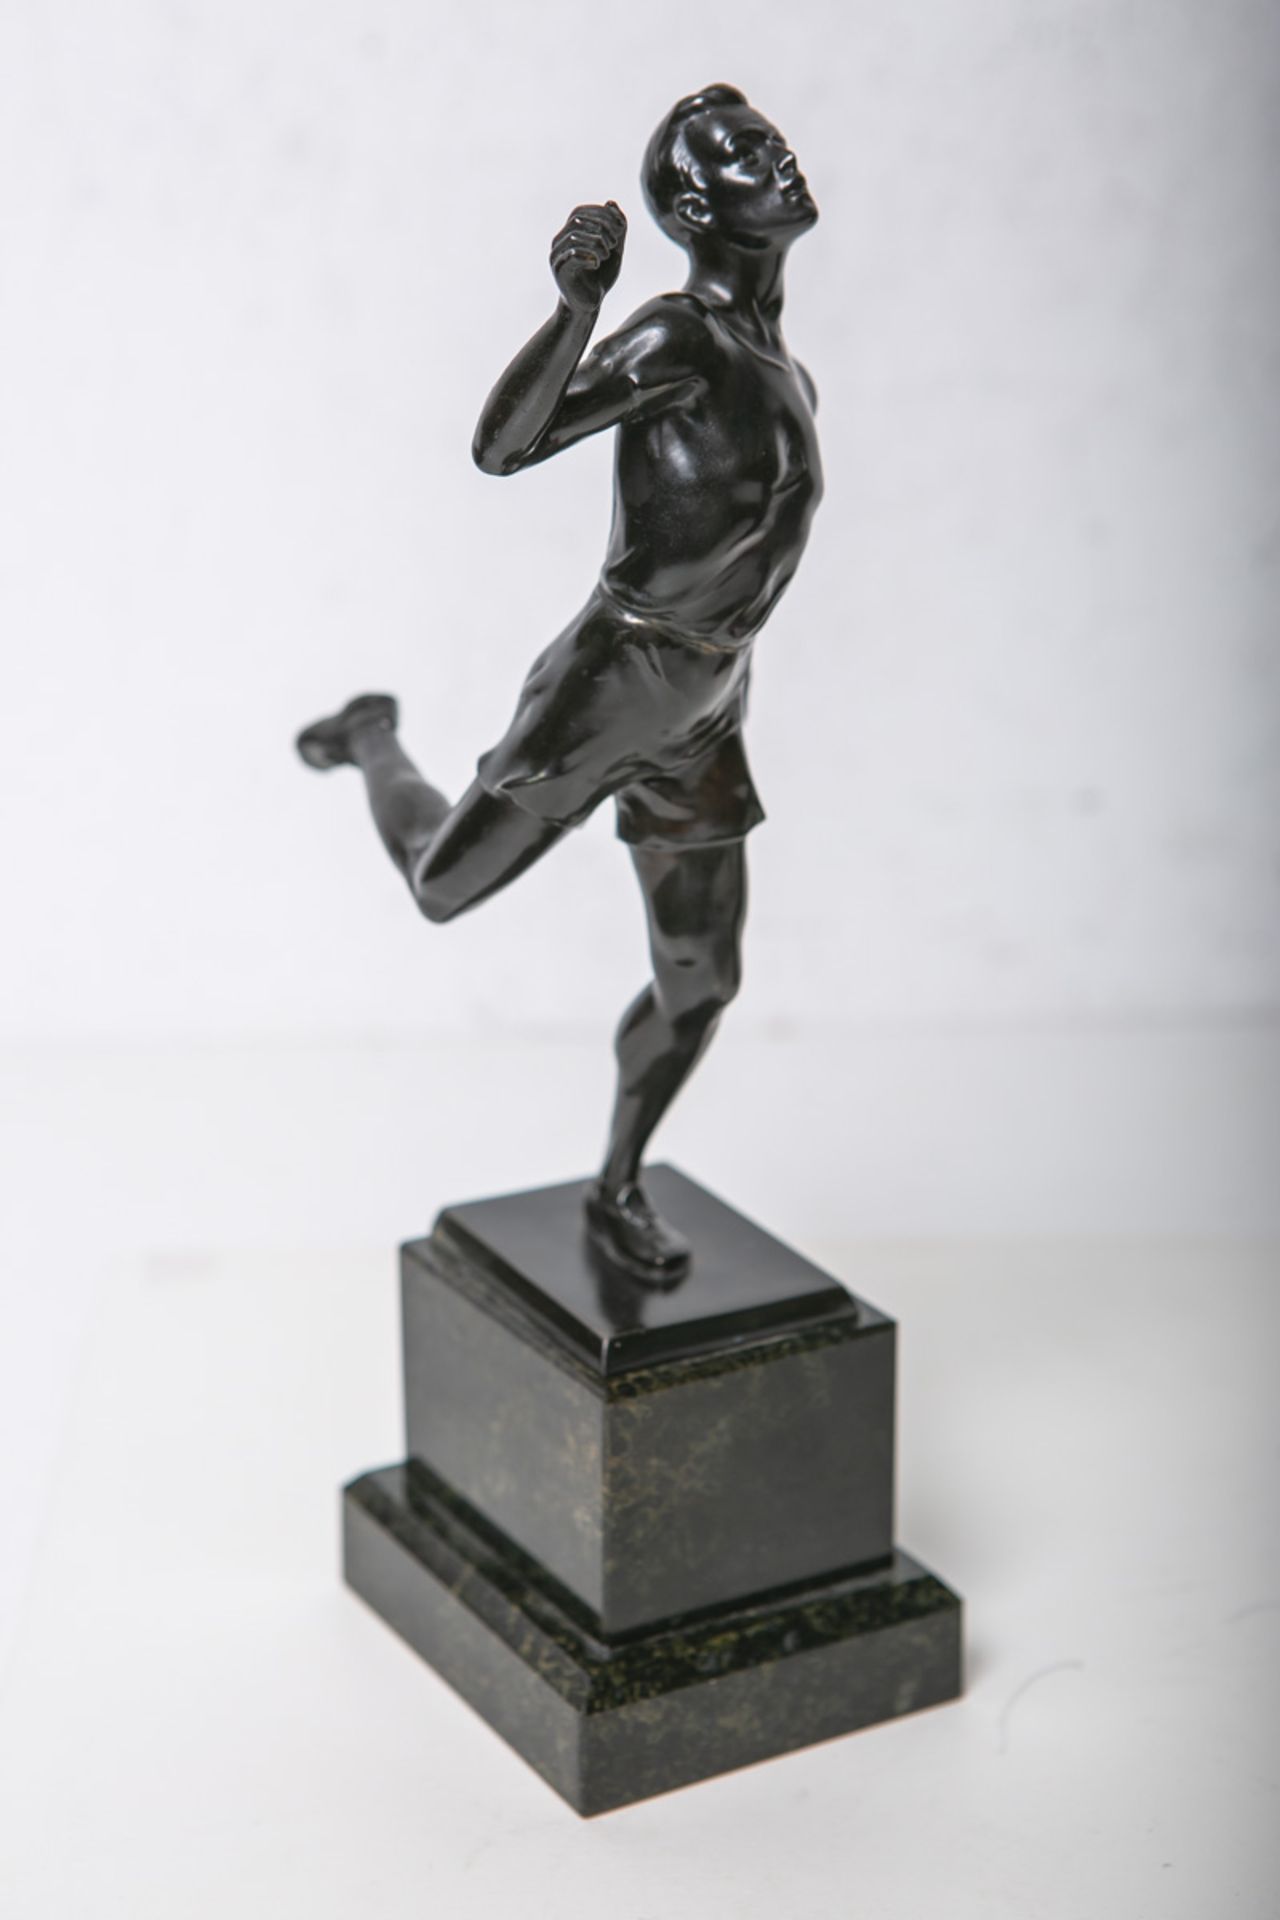 Unbekannter Künstler (wohl 19./20. Jh.), Bronzedarstellung eines ins Ziel einlaufenden Läufers